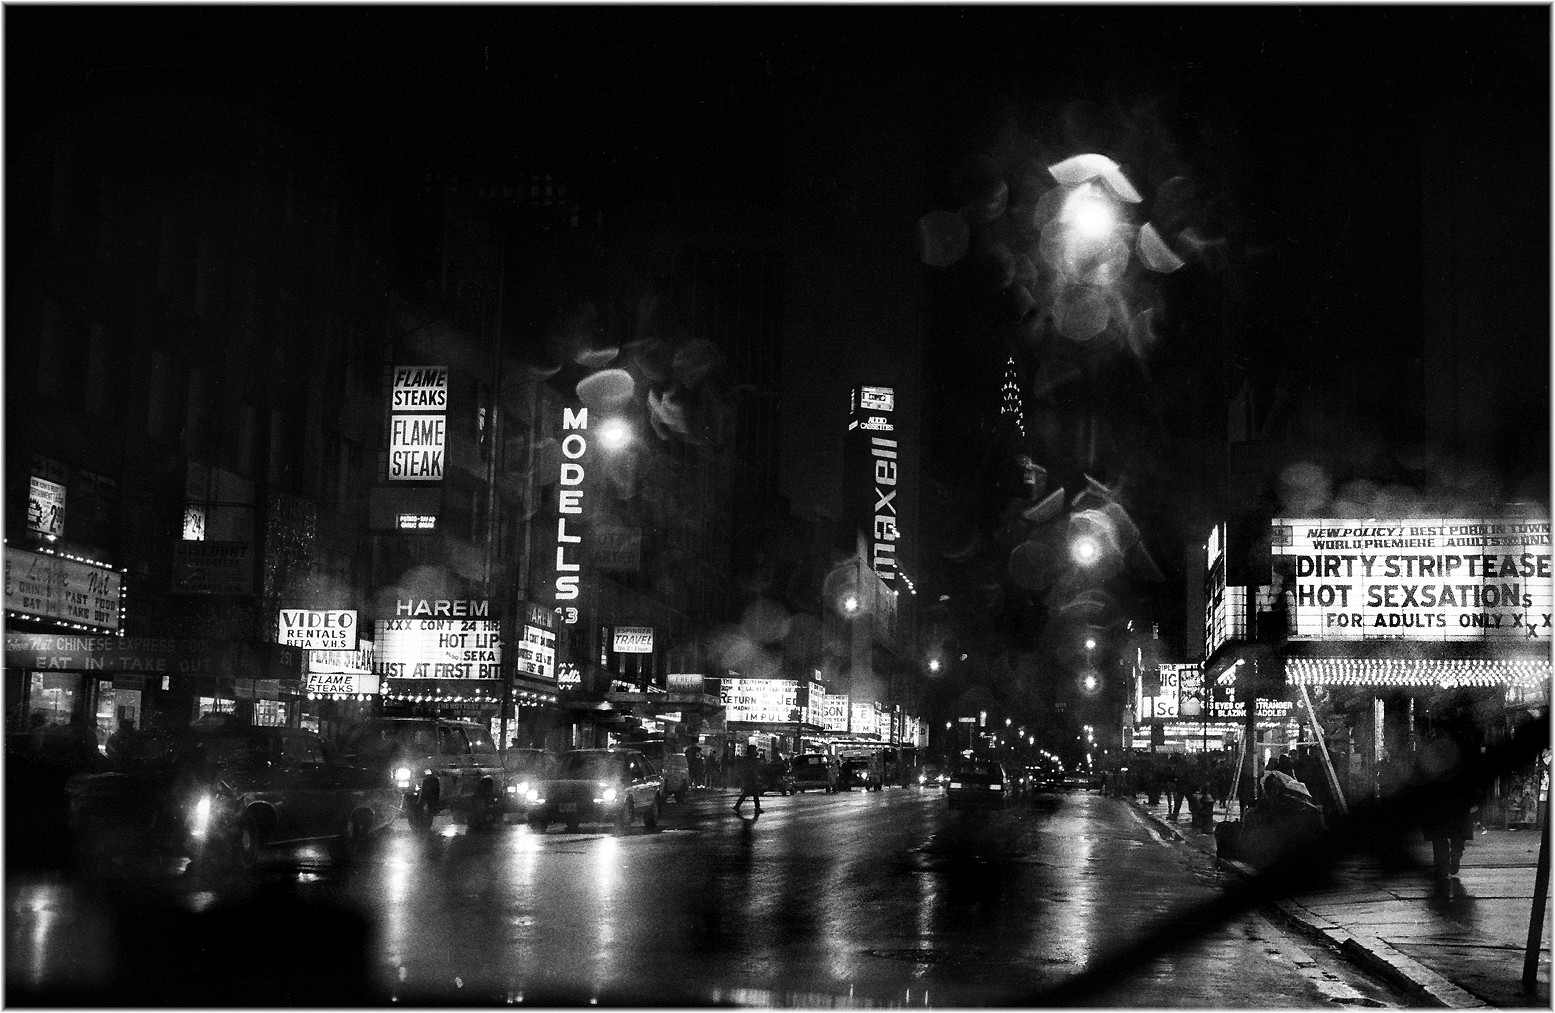 42-я улица дождливой ночью, Нью-Йорк, 1985. Фотограф Мэтт Вебер